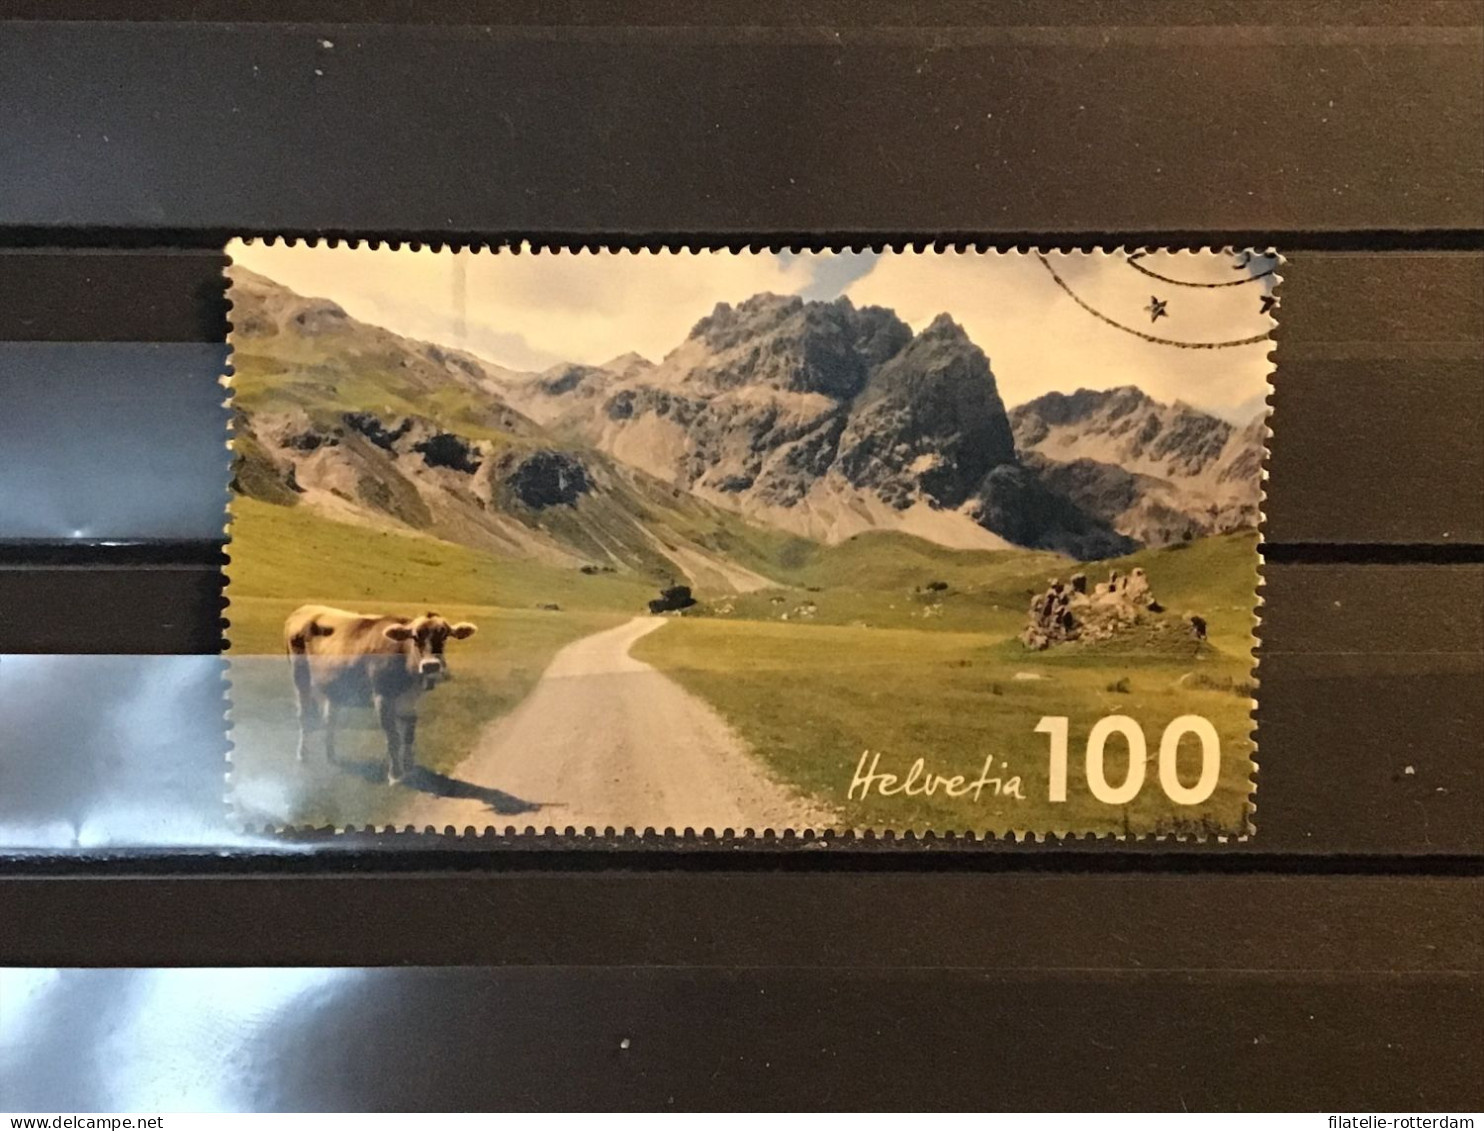 Switzerland / Zwitserland - Mountains (100) 2019 - Gebraucht